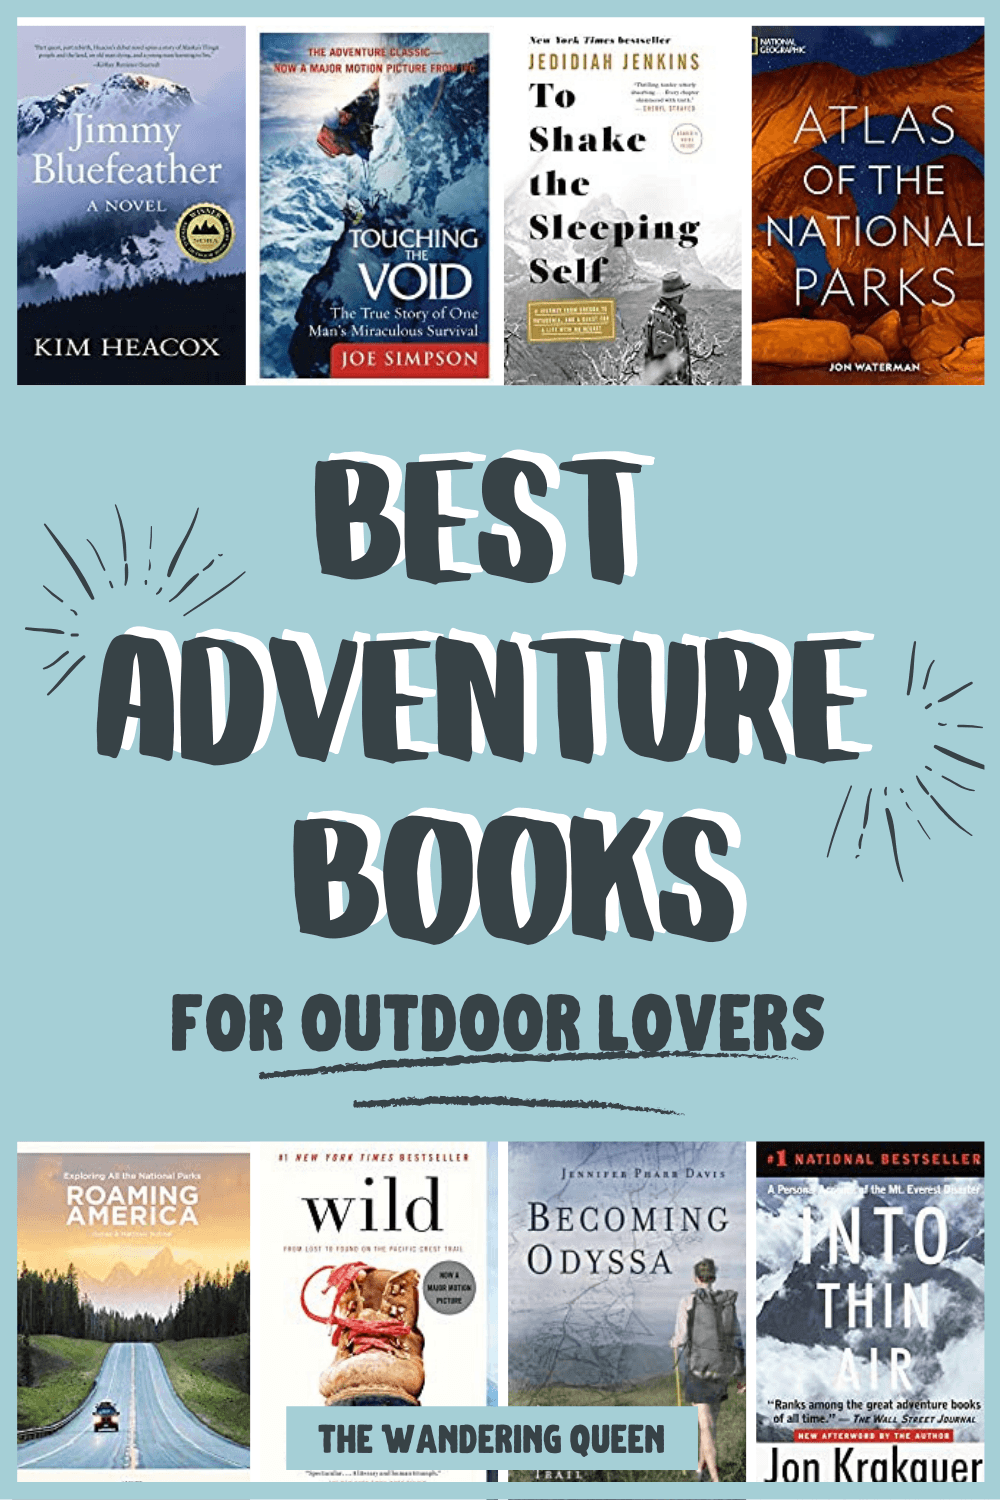 Best Adventure Books For Outdoor Lovers - The Wandering Queen